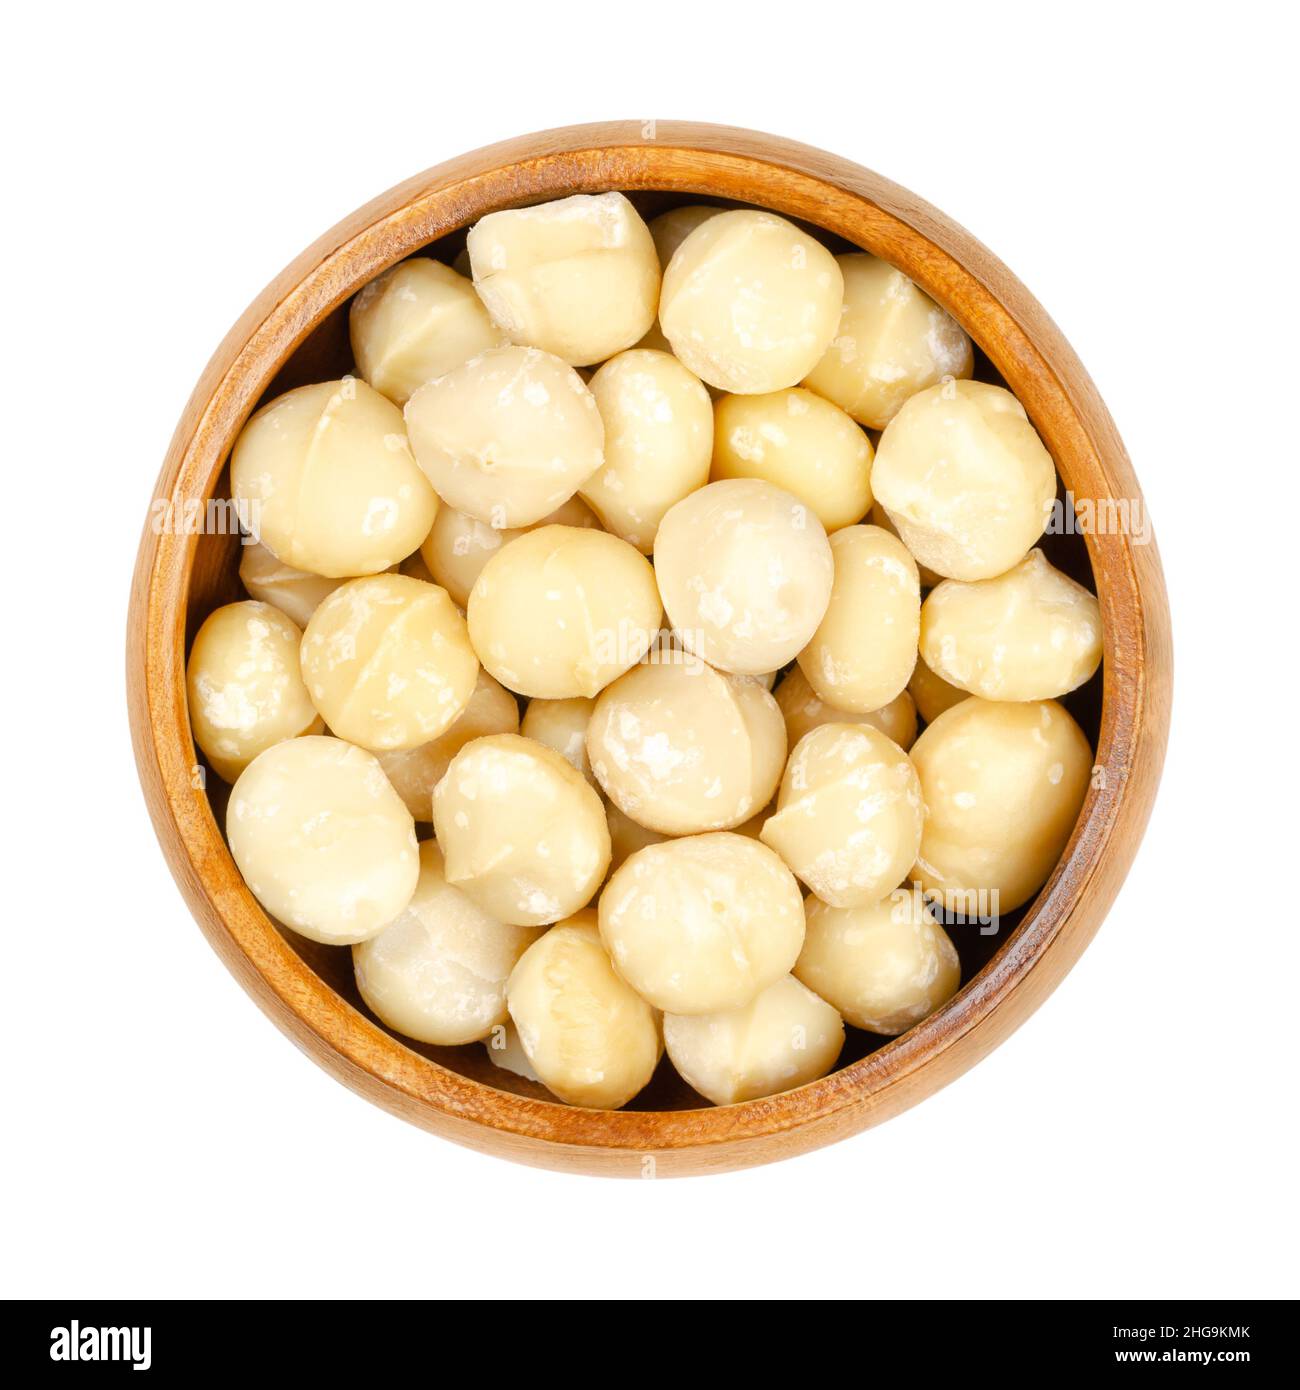 Noix de macadamia décortiquées et séchées, dans un bol en bois.Aussi appelé Queensland, buisson, maroochi, baule ou Hawaii noix.En-cas sain. Banque D'Images